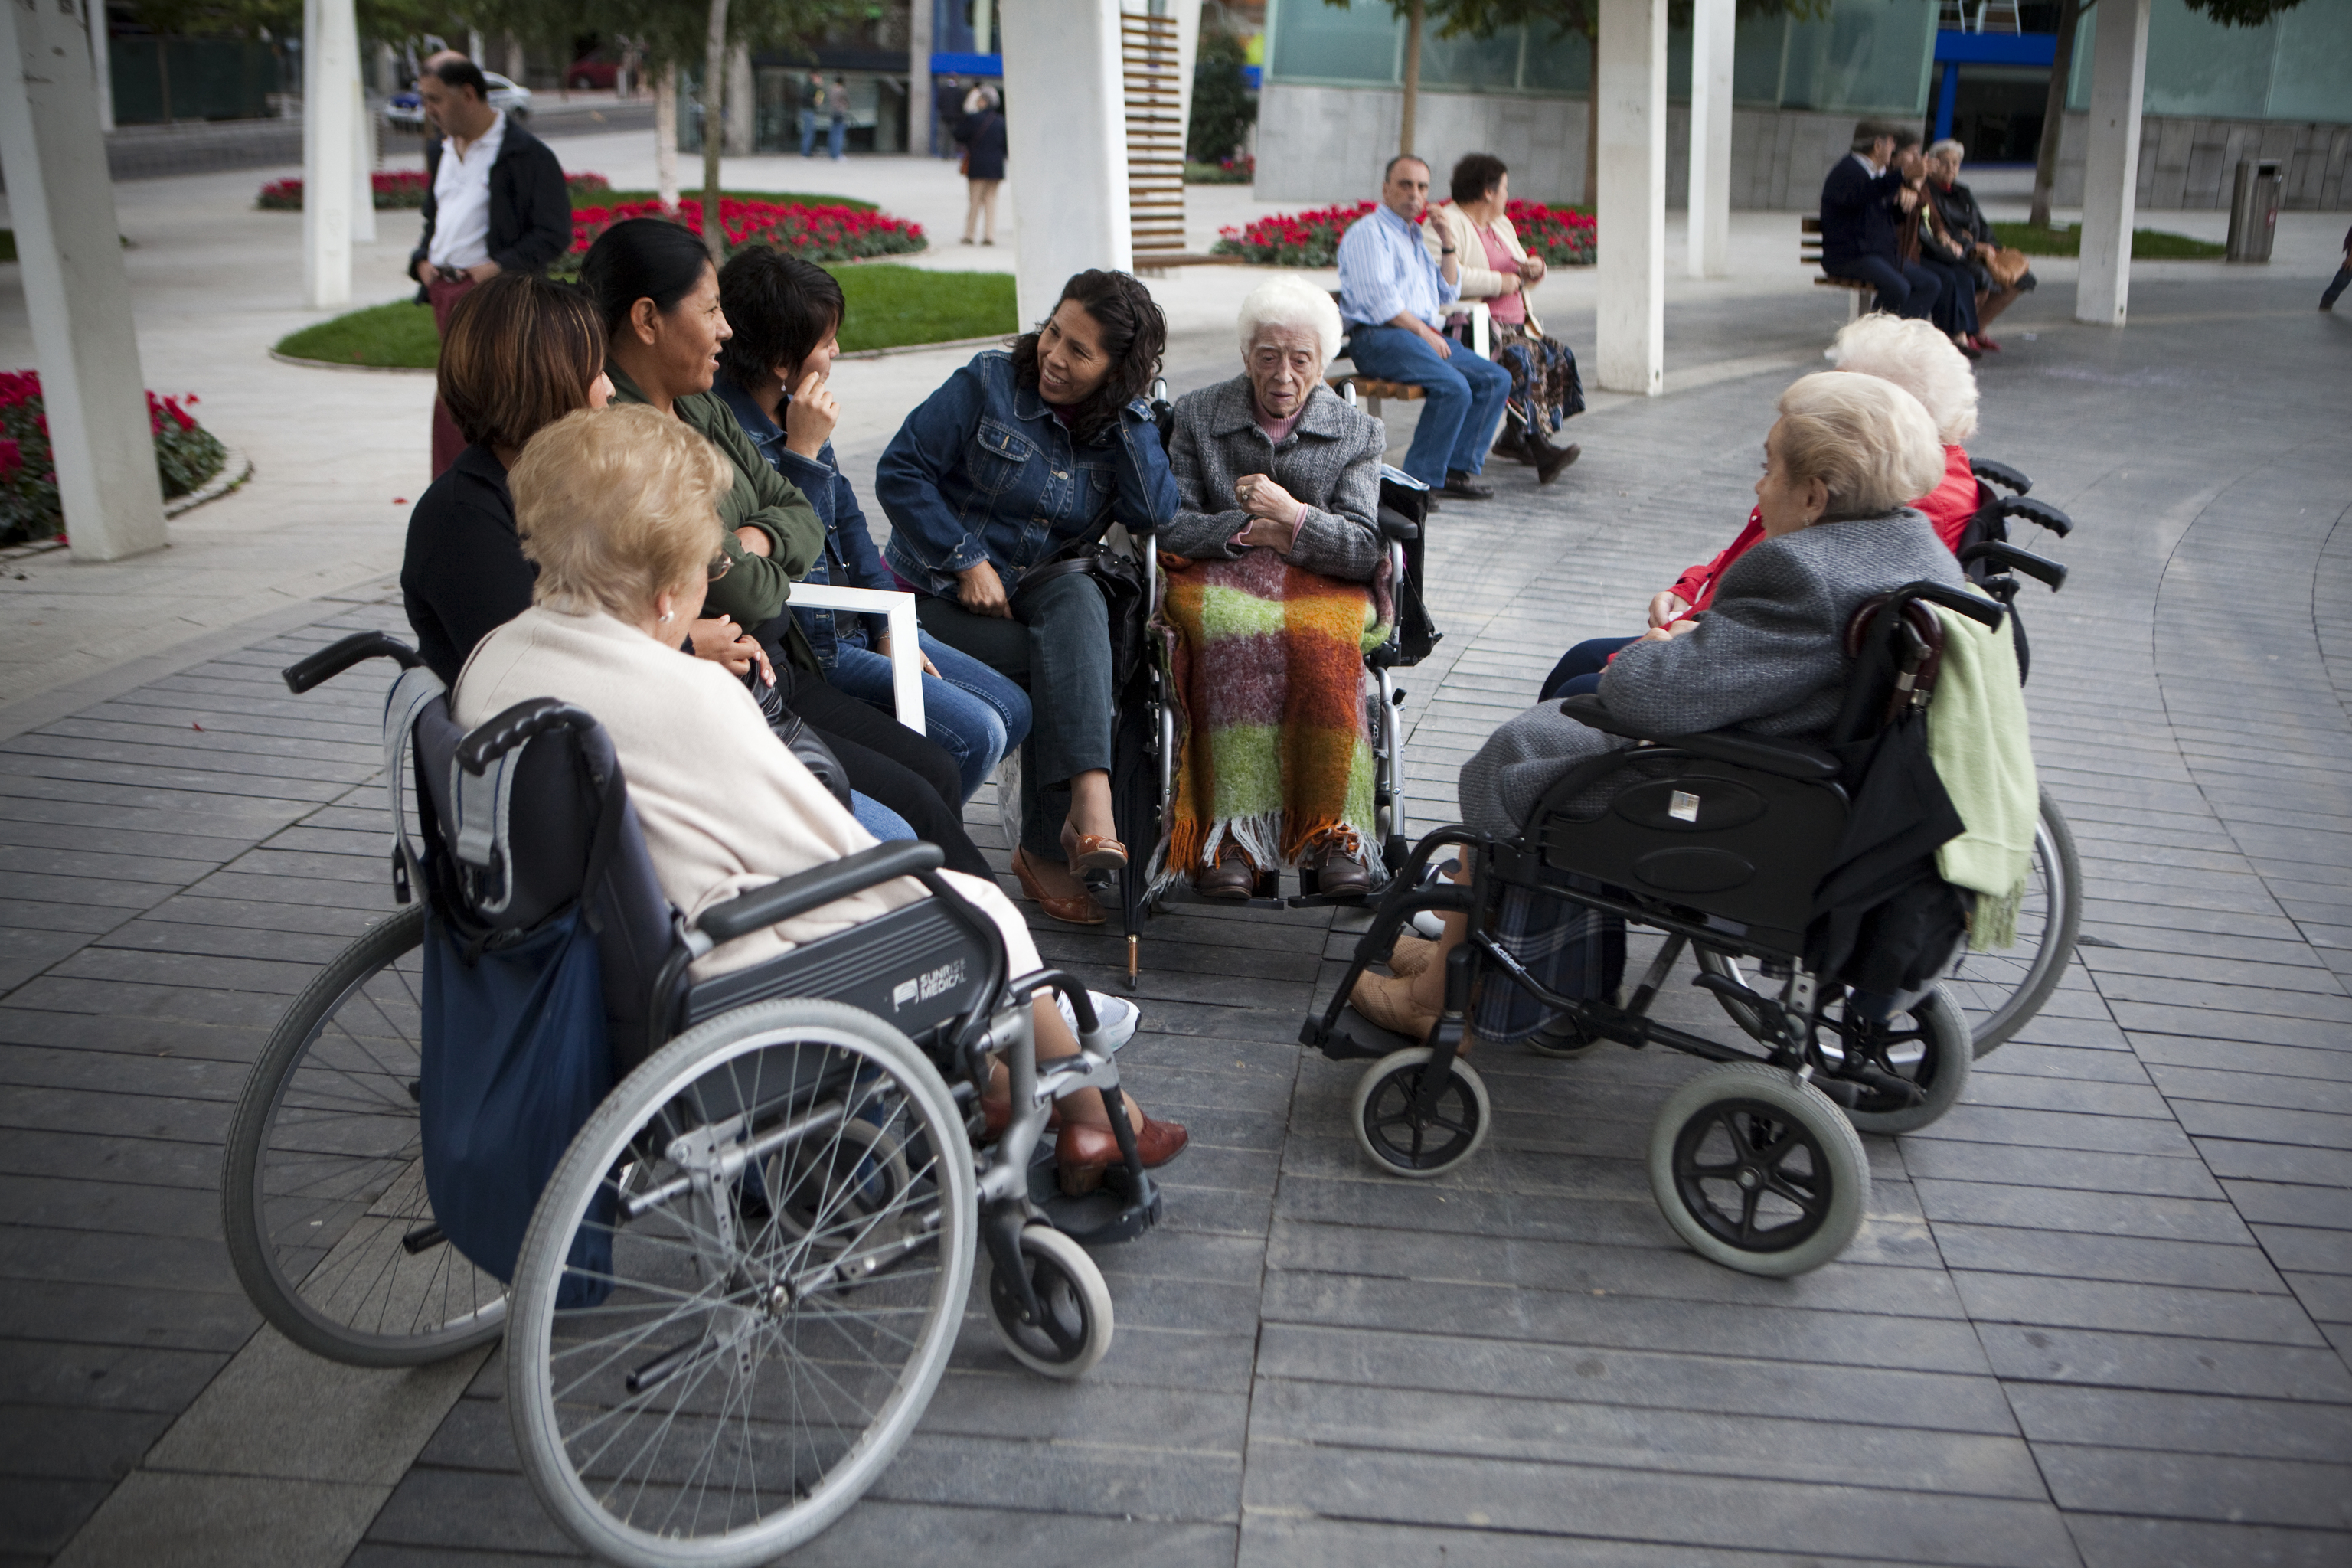 Ley de dependencia - mujeres inmigrantes latinoamericanas trabajan cuidando a personas mayores - ancianas - viejas - en silla de ruedas en el parque - trabajo - ancianos - vejez - minusvalia - cuidadoras